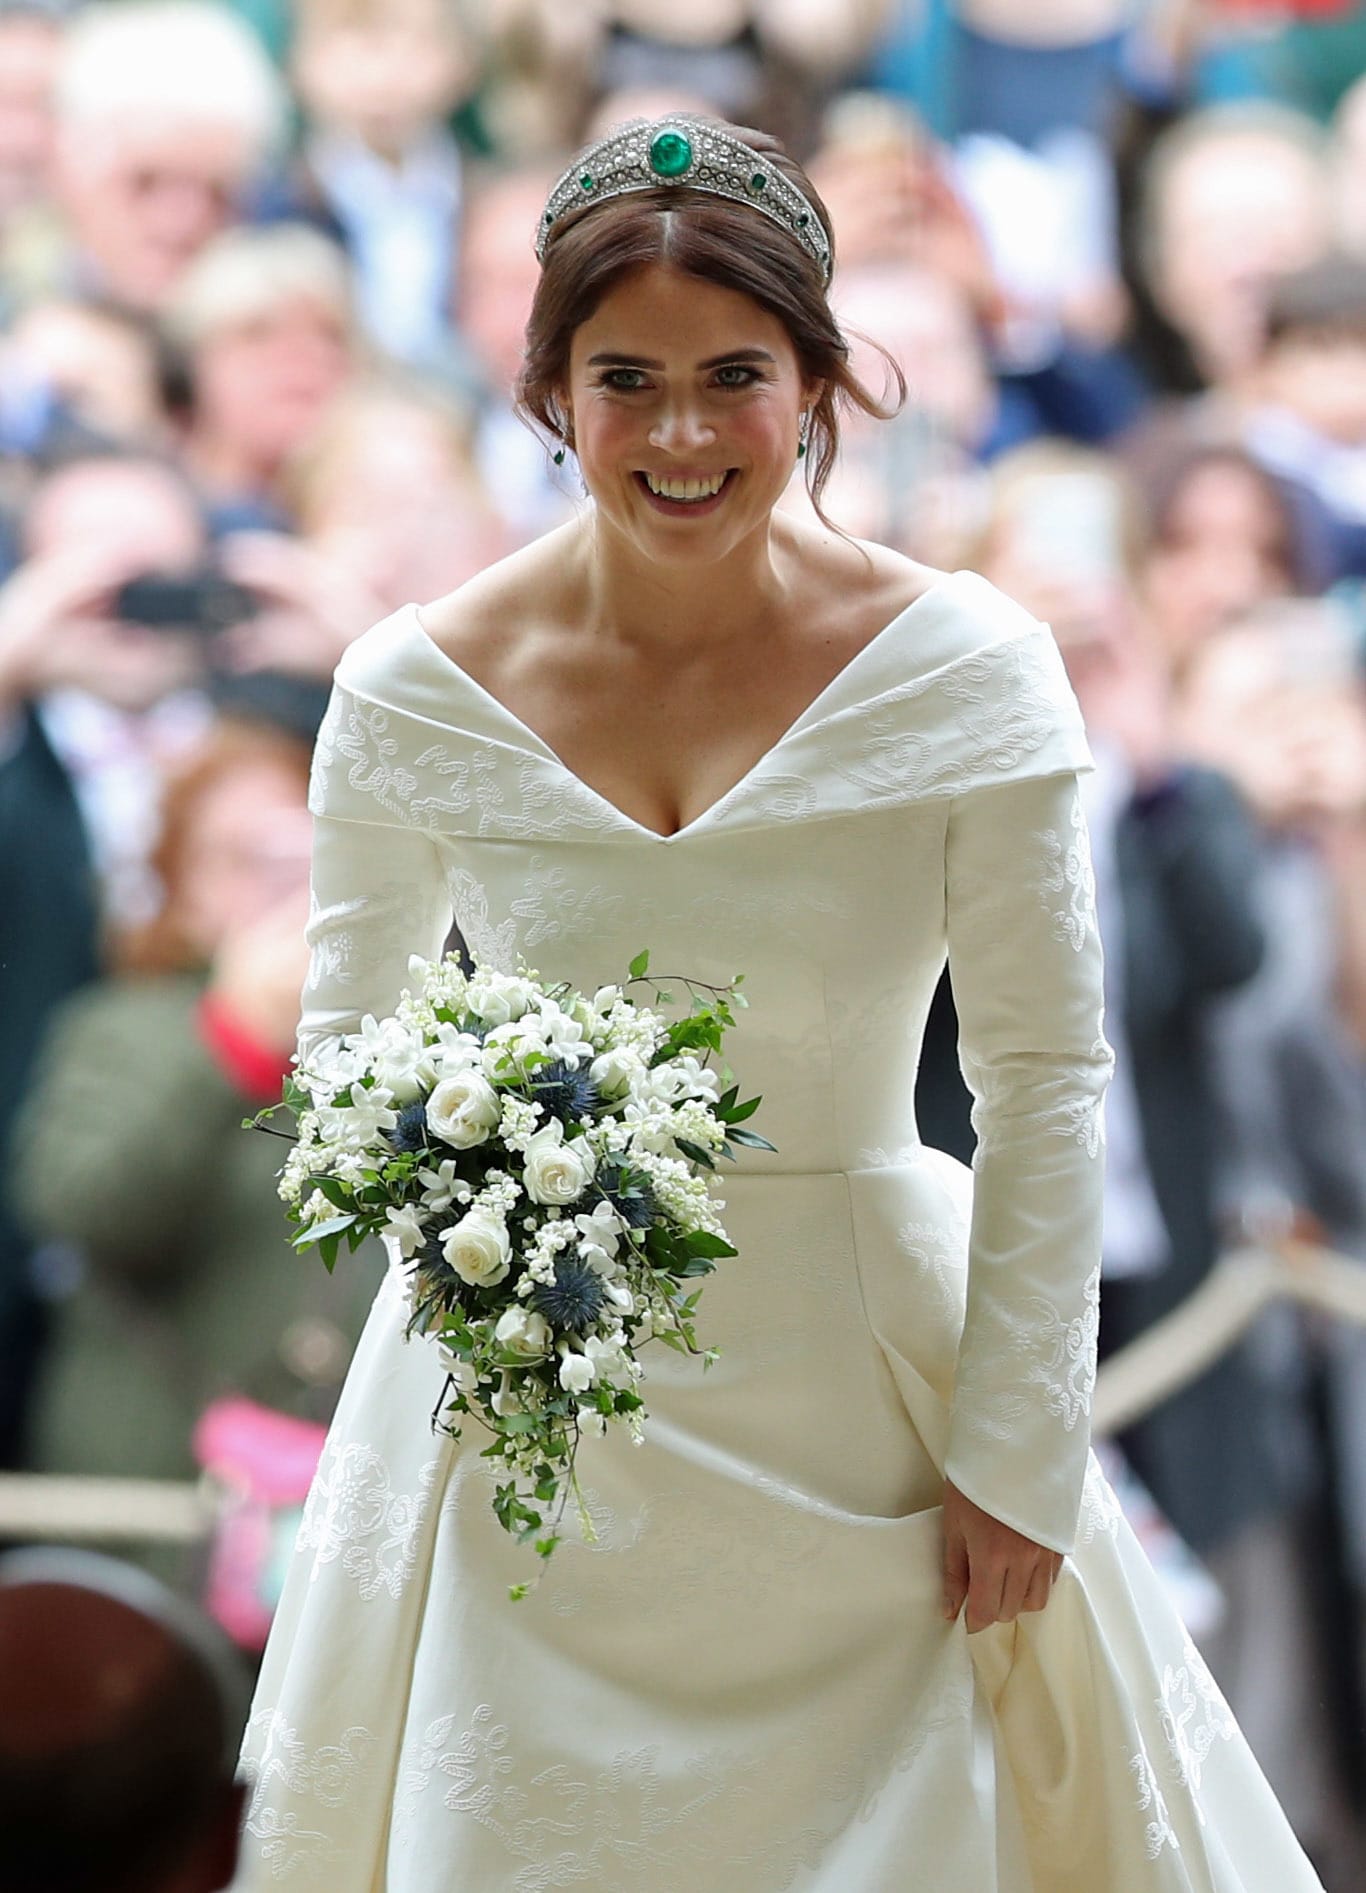 Prinzessin Eugenie: Ihr Brautkleid stammt von Peter Pilotto und Christopher de Vos.